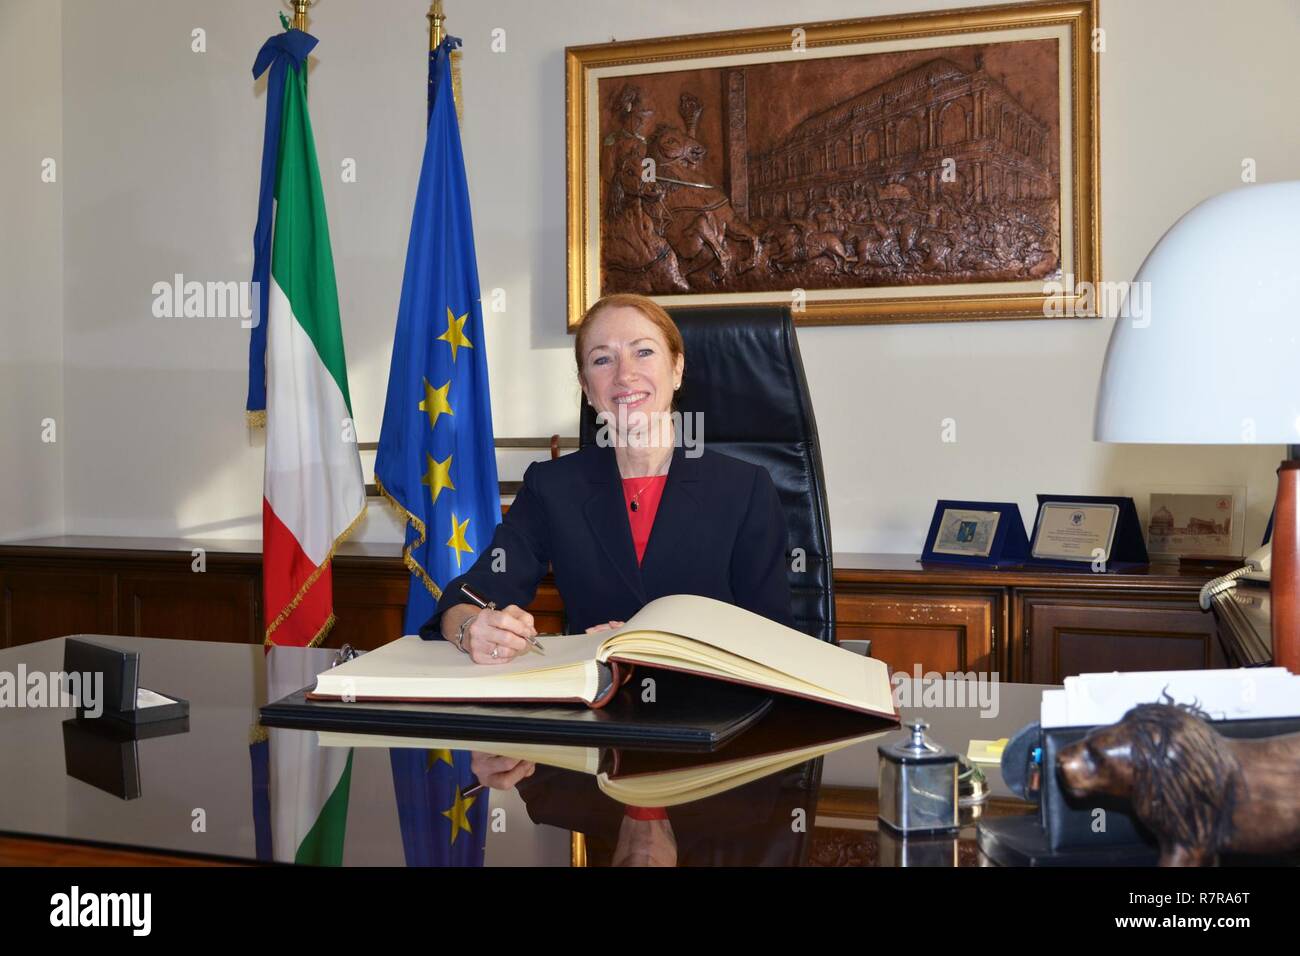 La Sra. Kelly Degnan, cargo' d'Affaires ad interim de la Embajada y consulados de Italia, firma el libro de invitados de honor durante la visita al centro de excelencia para unidades de policía de estabilidad (CoESPU) de Vicenza, Italia, el 30 de marzo, 2017. Foto de stock